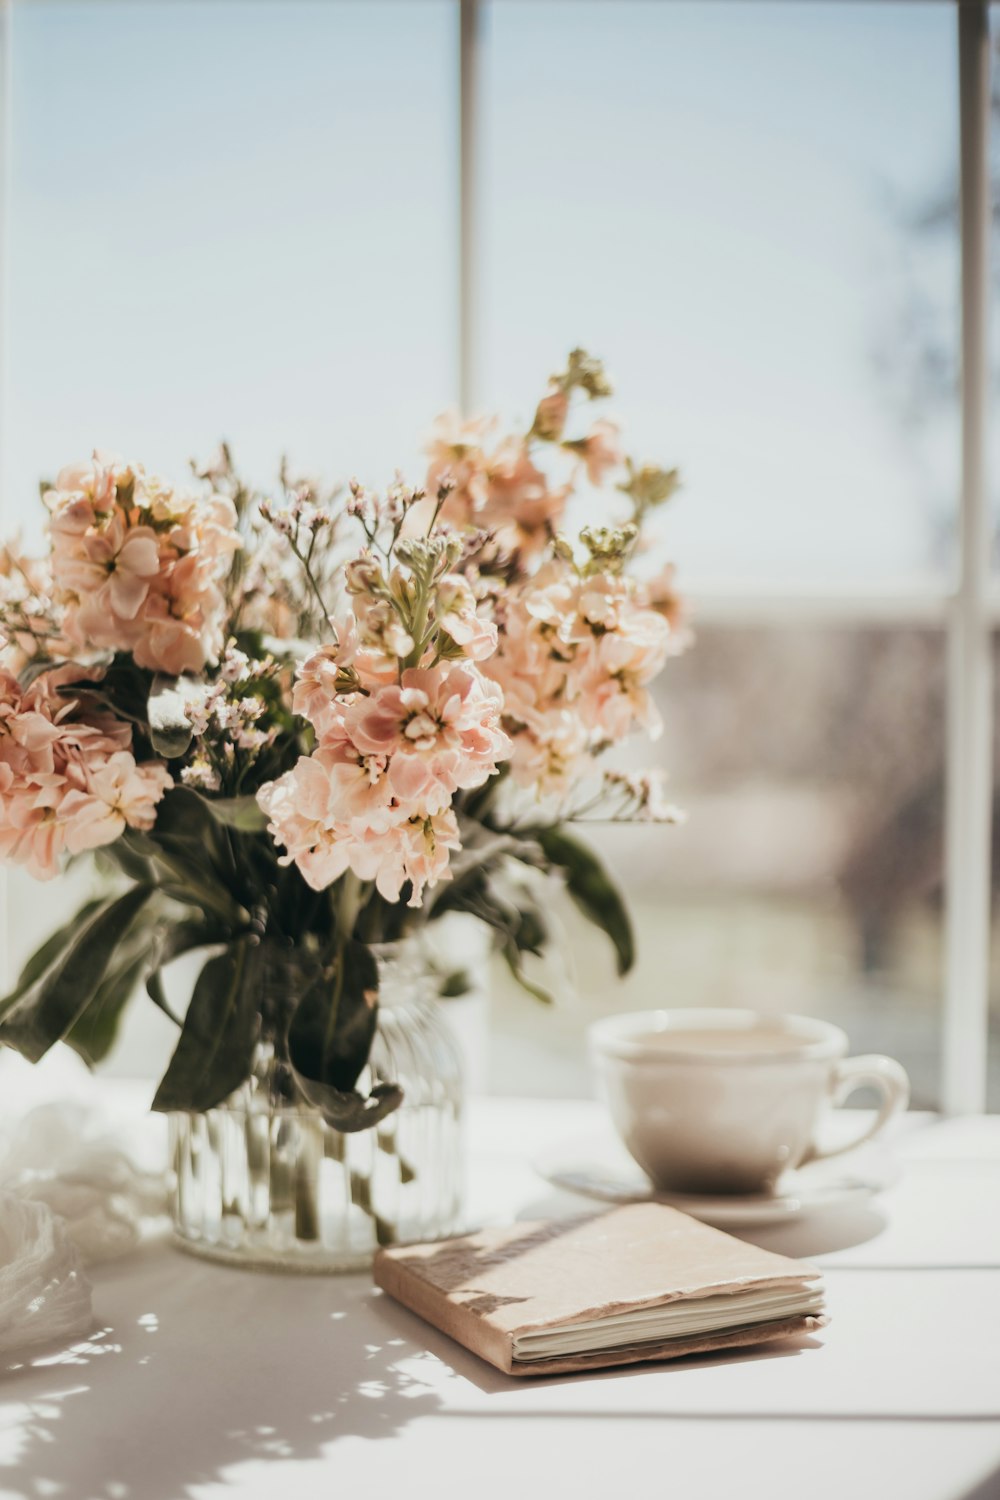 fleurs blanches et roses sur une tasse de thé en céramique blanche sur un tableau blanc